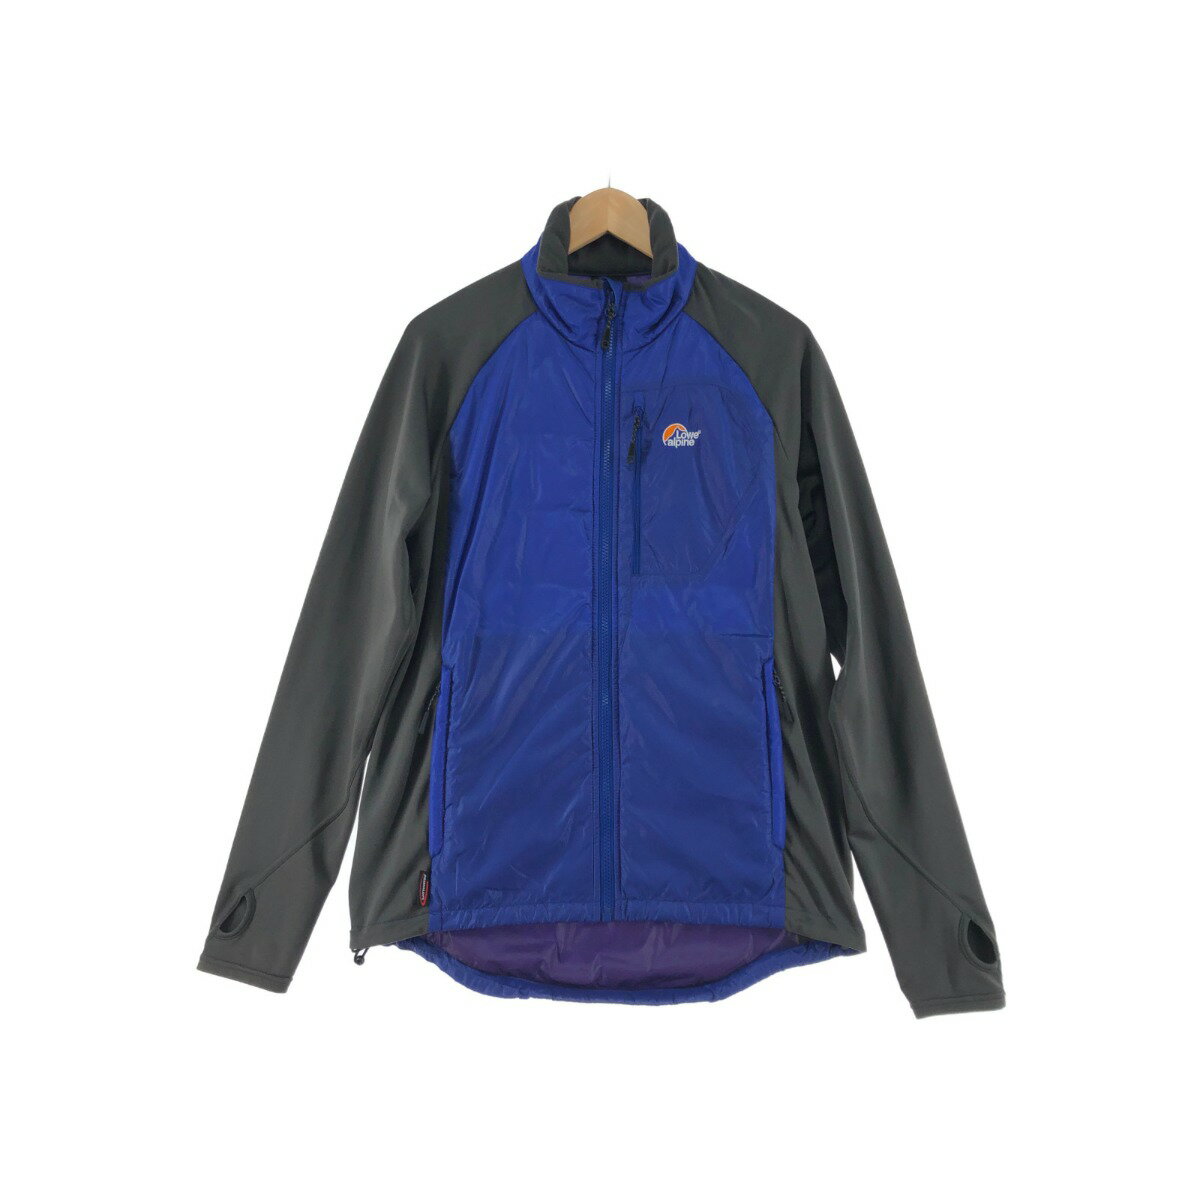 〇〇【中古】lowe alpine メンズ ジャケット サイズM LFM12036 ブルー×グレー Bランク